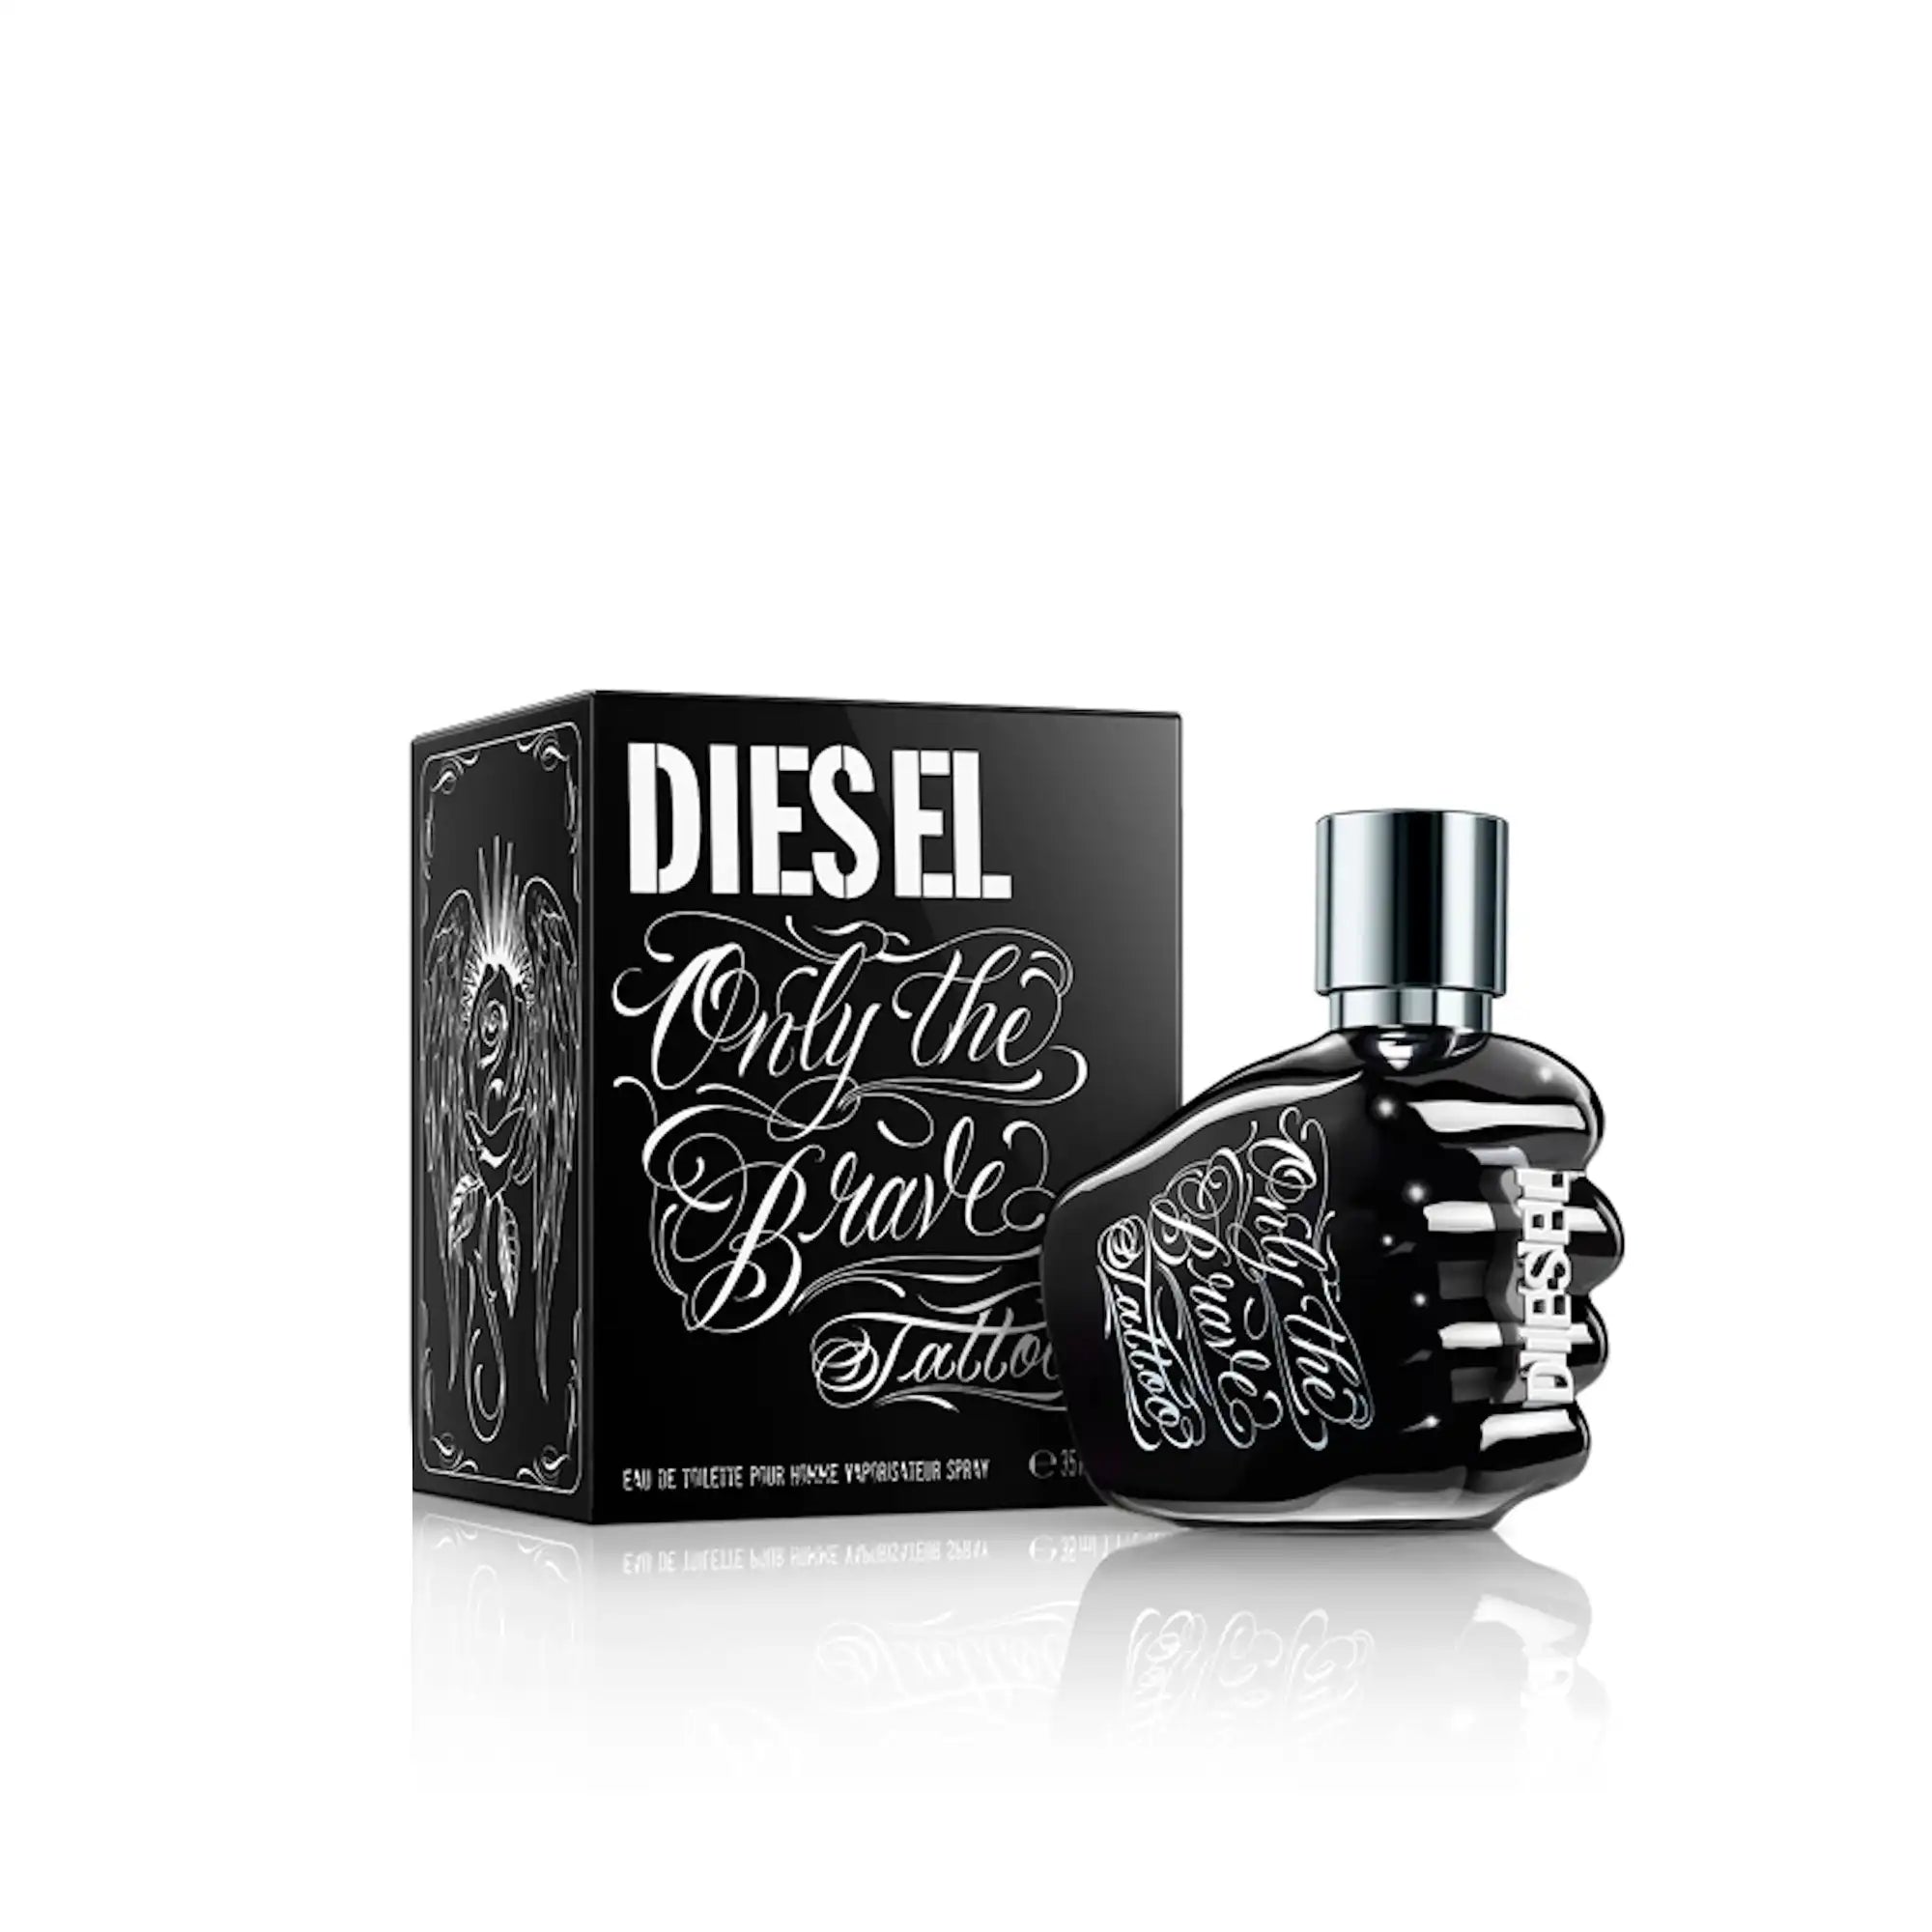 Diesel Only The Brave Tattoo Eau de Toilette 50ml Packaging